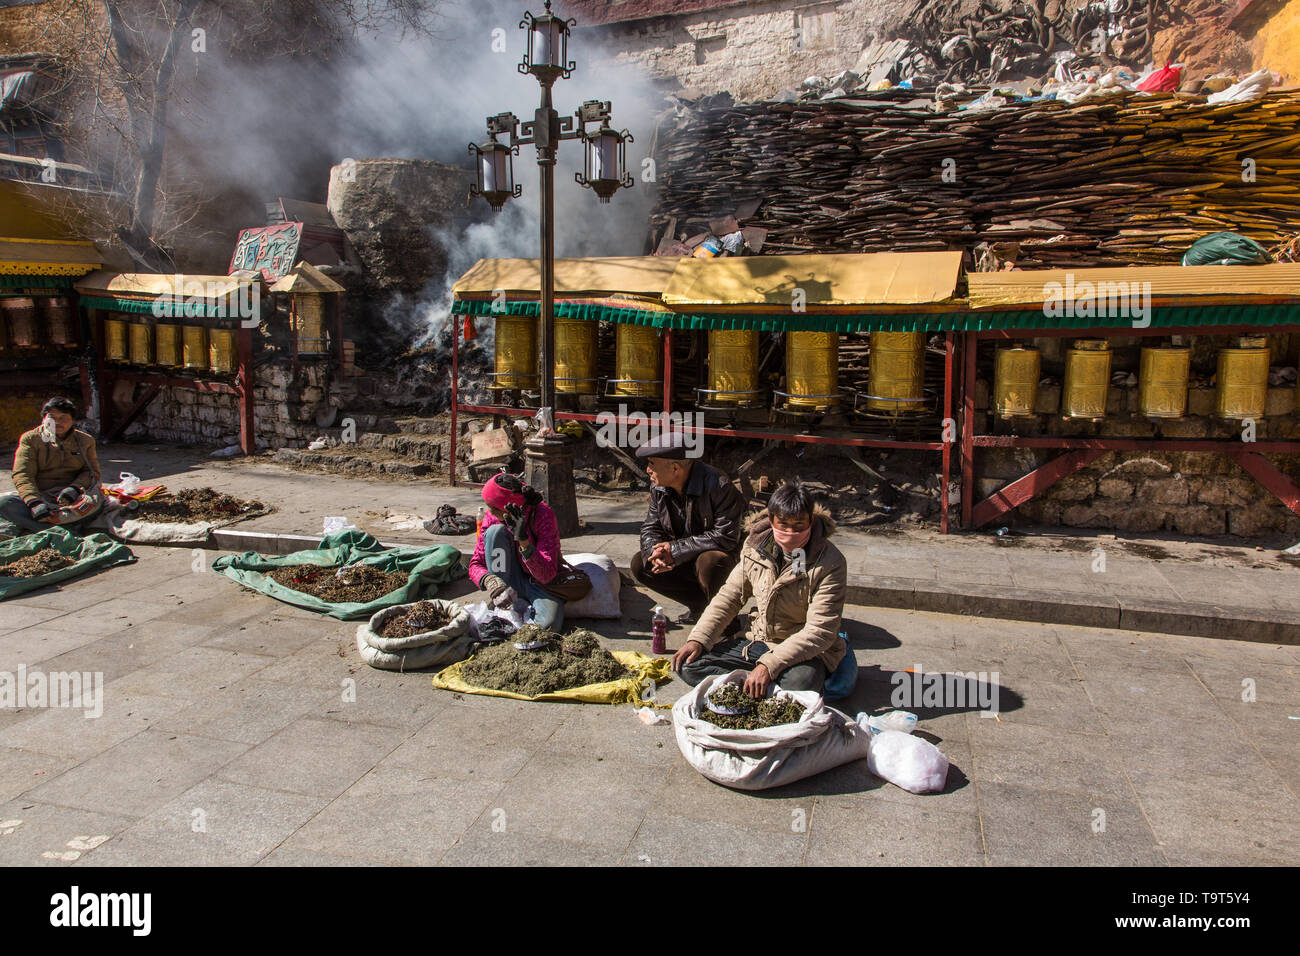 Marchands vendant de l'encens sur la rue en face d'un lieu de culte sur le cercle ci-dessous la circumambulation Palais du Potala à Lhassa, au Tibet. Banque D'Images